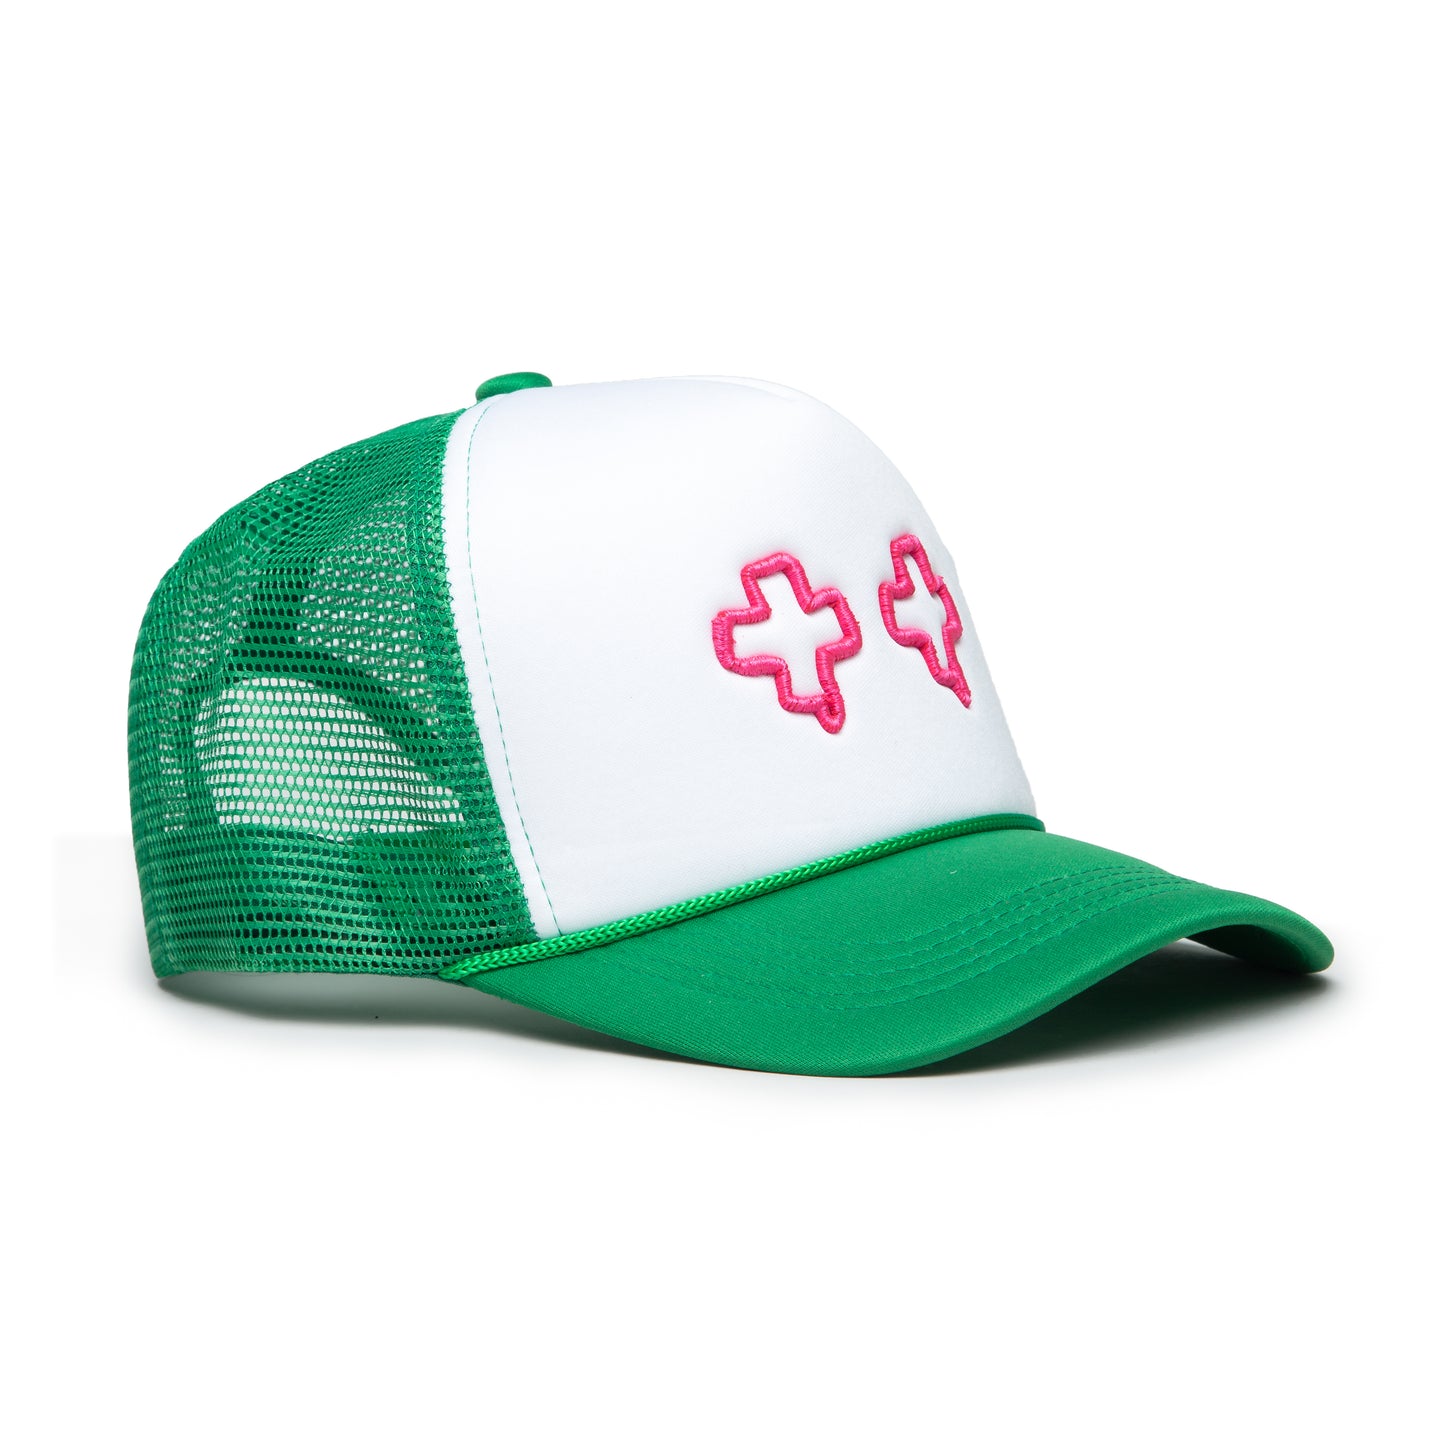 Green & Pink Foam Trucker Hat